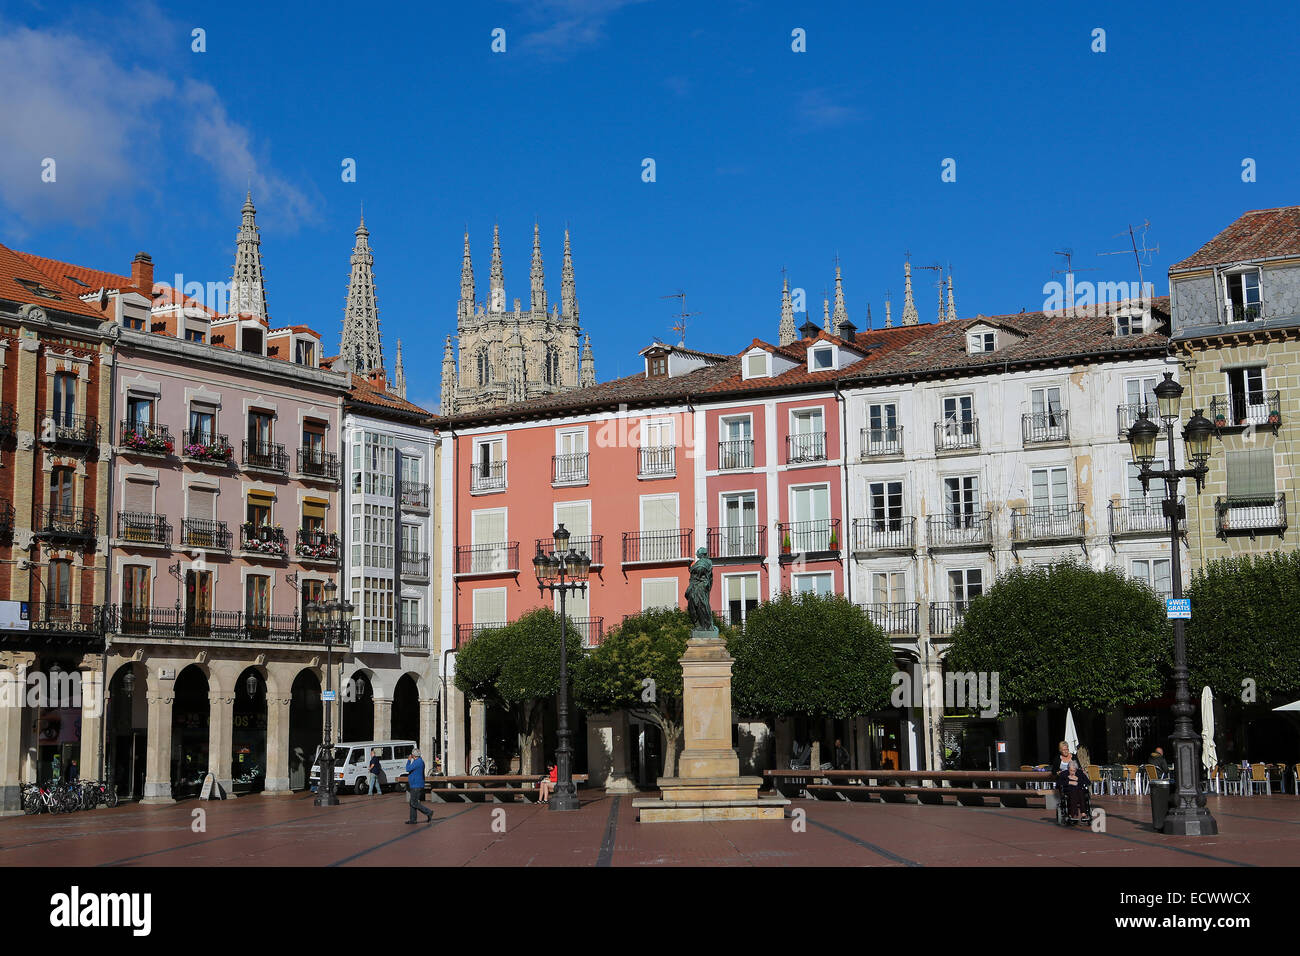 BURGOS, Spagna - 13 agosto 2014: Statua di re Carlos III sulla Plaza Mayor, la piazza principale di Burgos, Castille, Spagna. Foto Stock